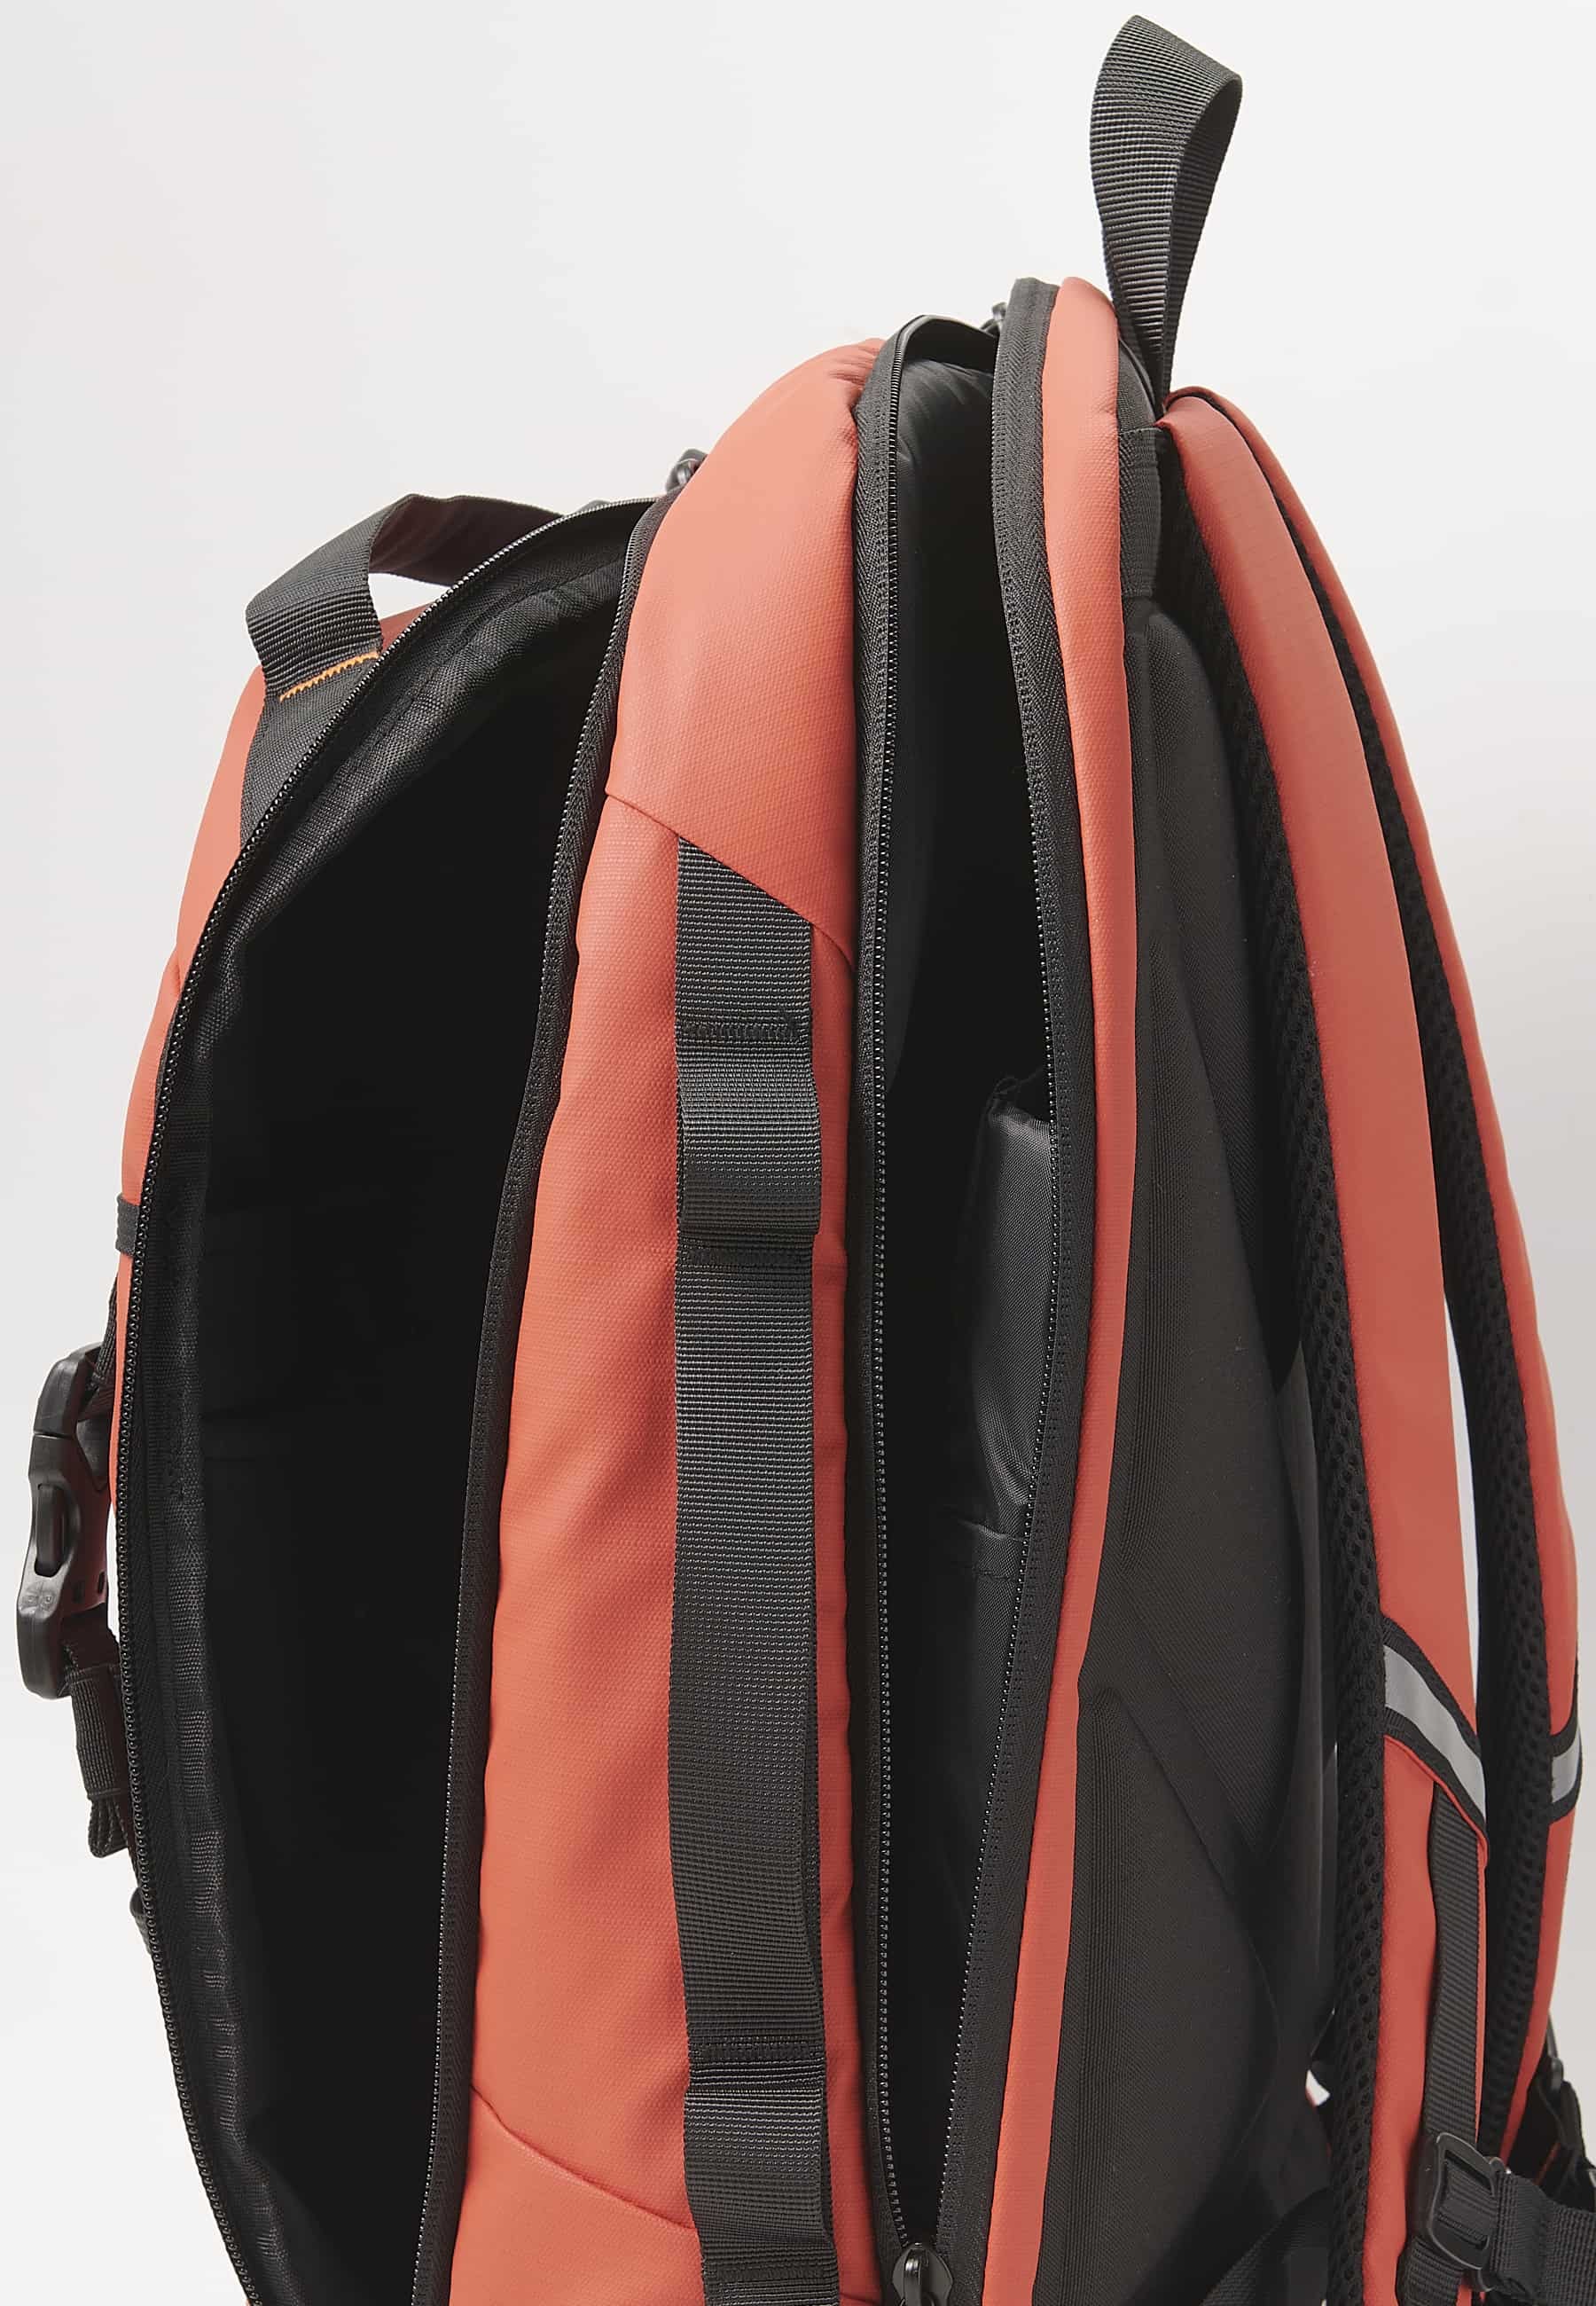 Koröshi-Rucksack mit zwei Reißverschlussfächern, eines für einen Laptop, und verstellbaren Trägern in Rot